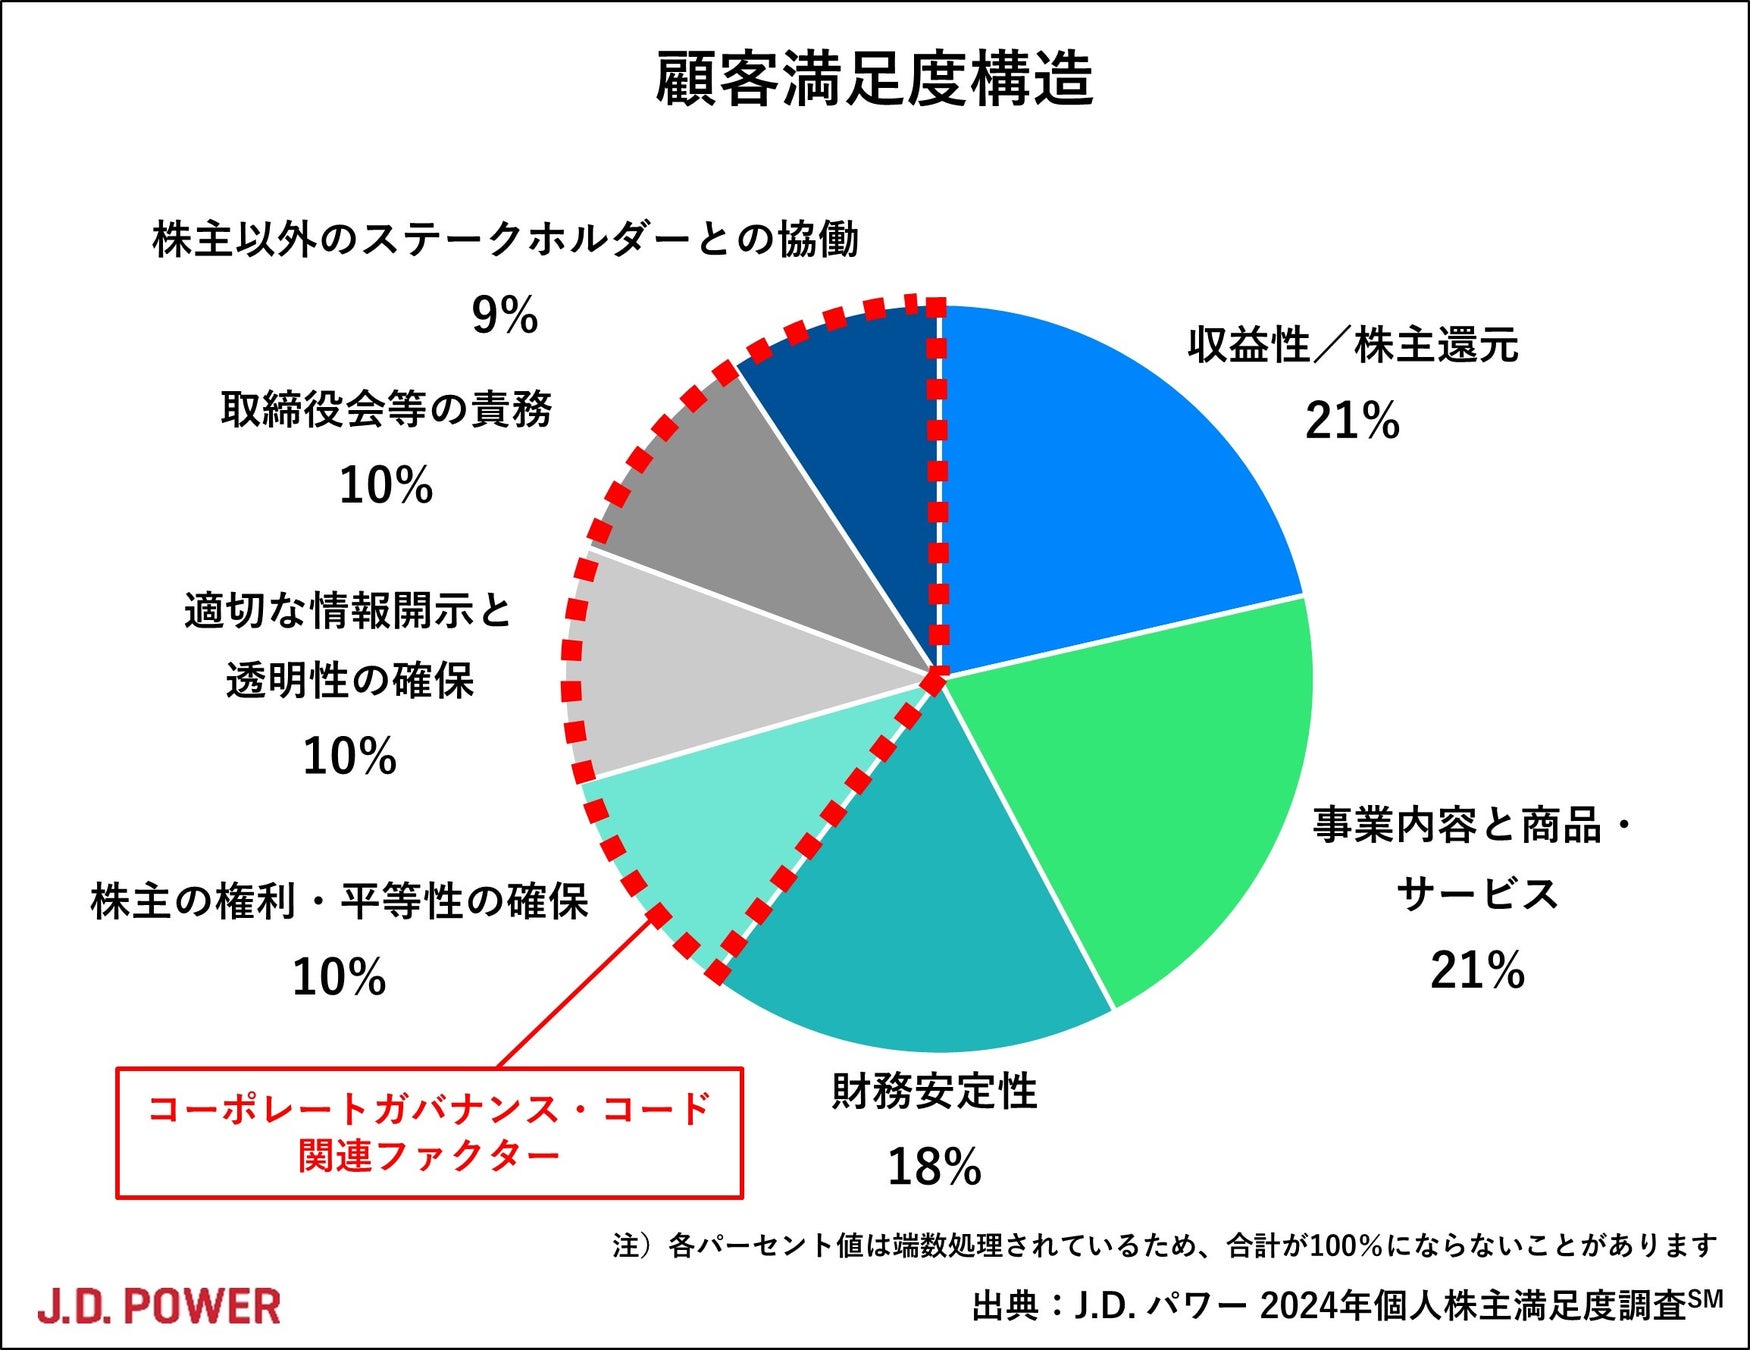 兵庫県姫路市とのがん検診等受診率向上推進協定の締結について